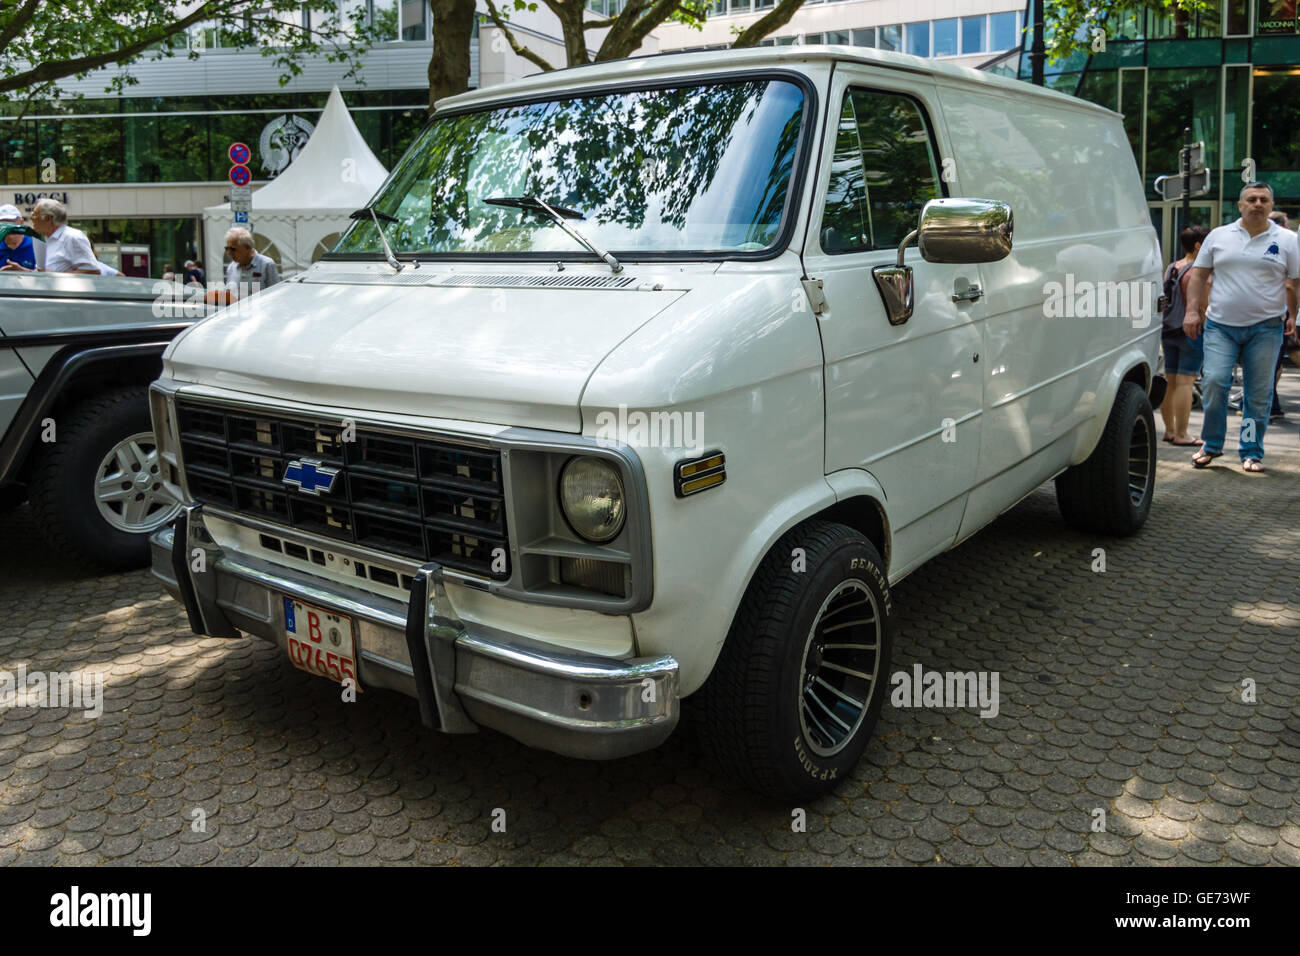 Chevrolet van immagini e fotografie stock ad alta risoluzione - Alamy